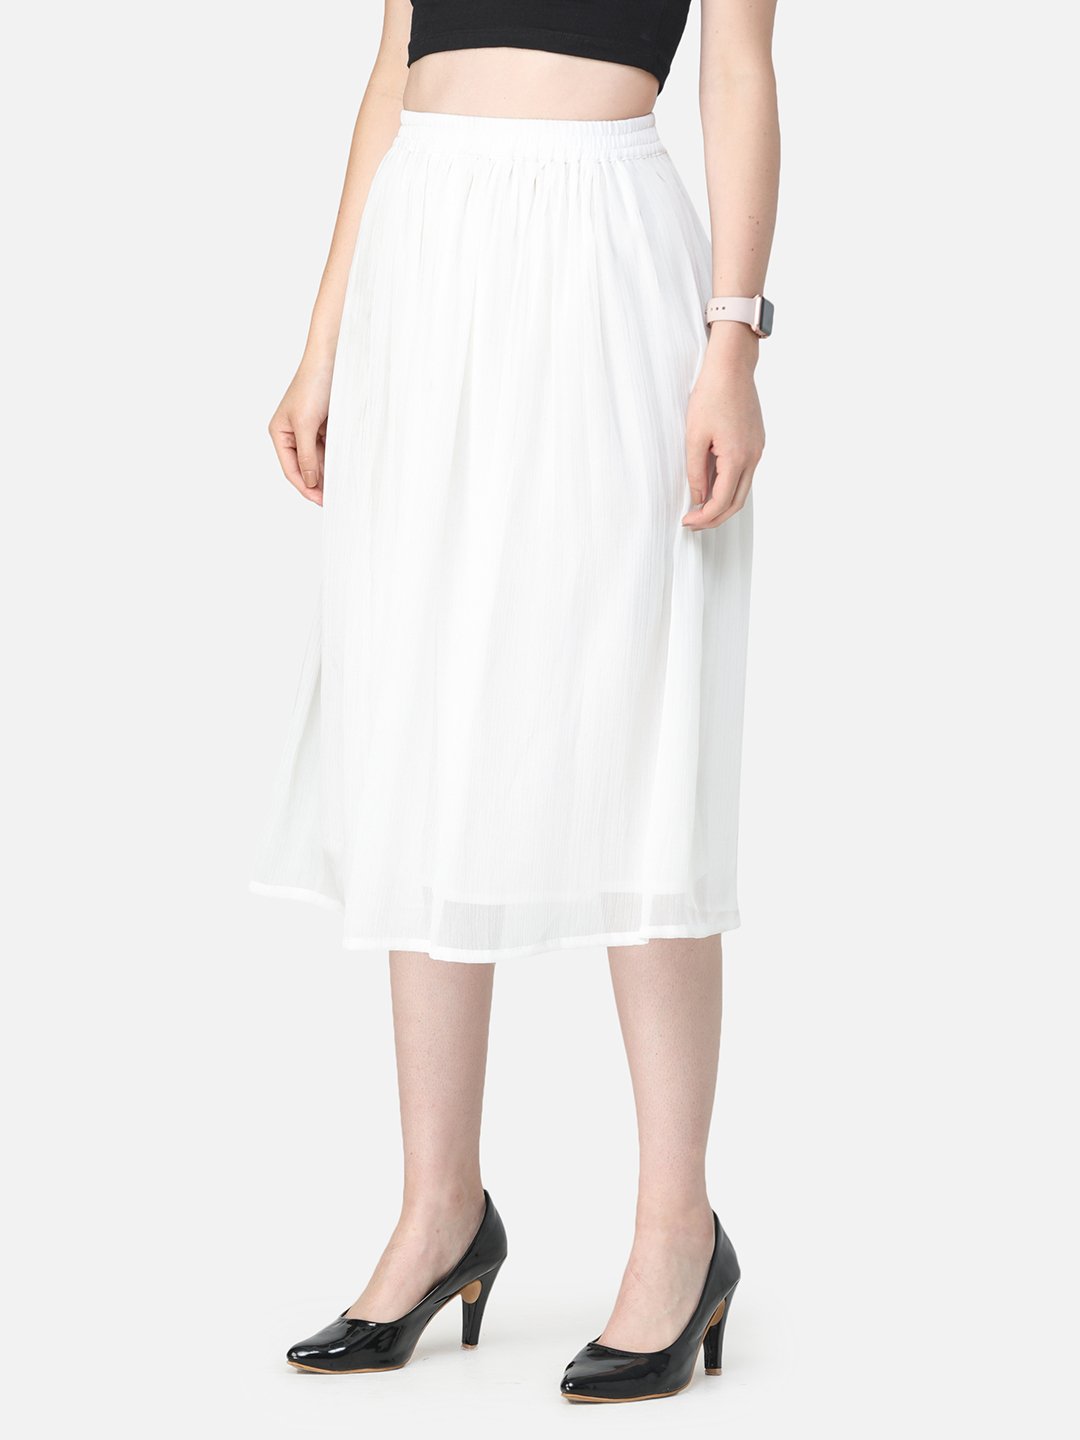 Solid White Skirt